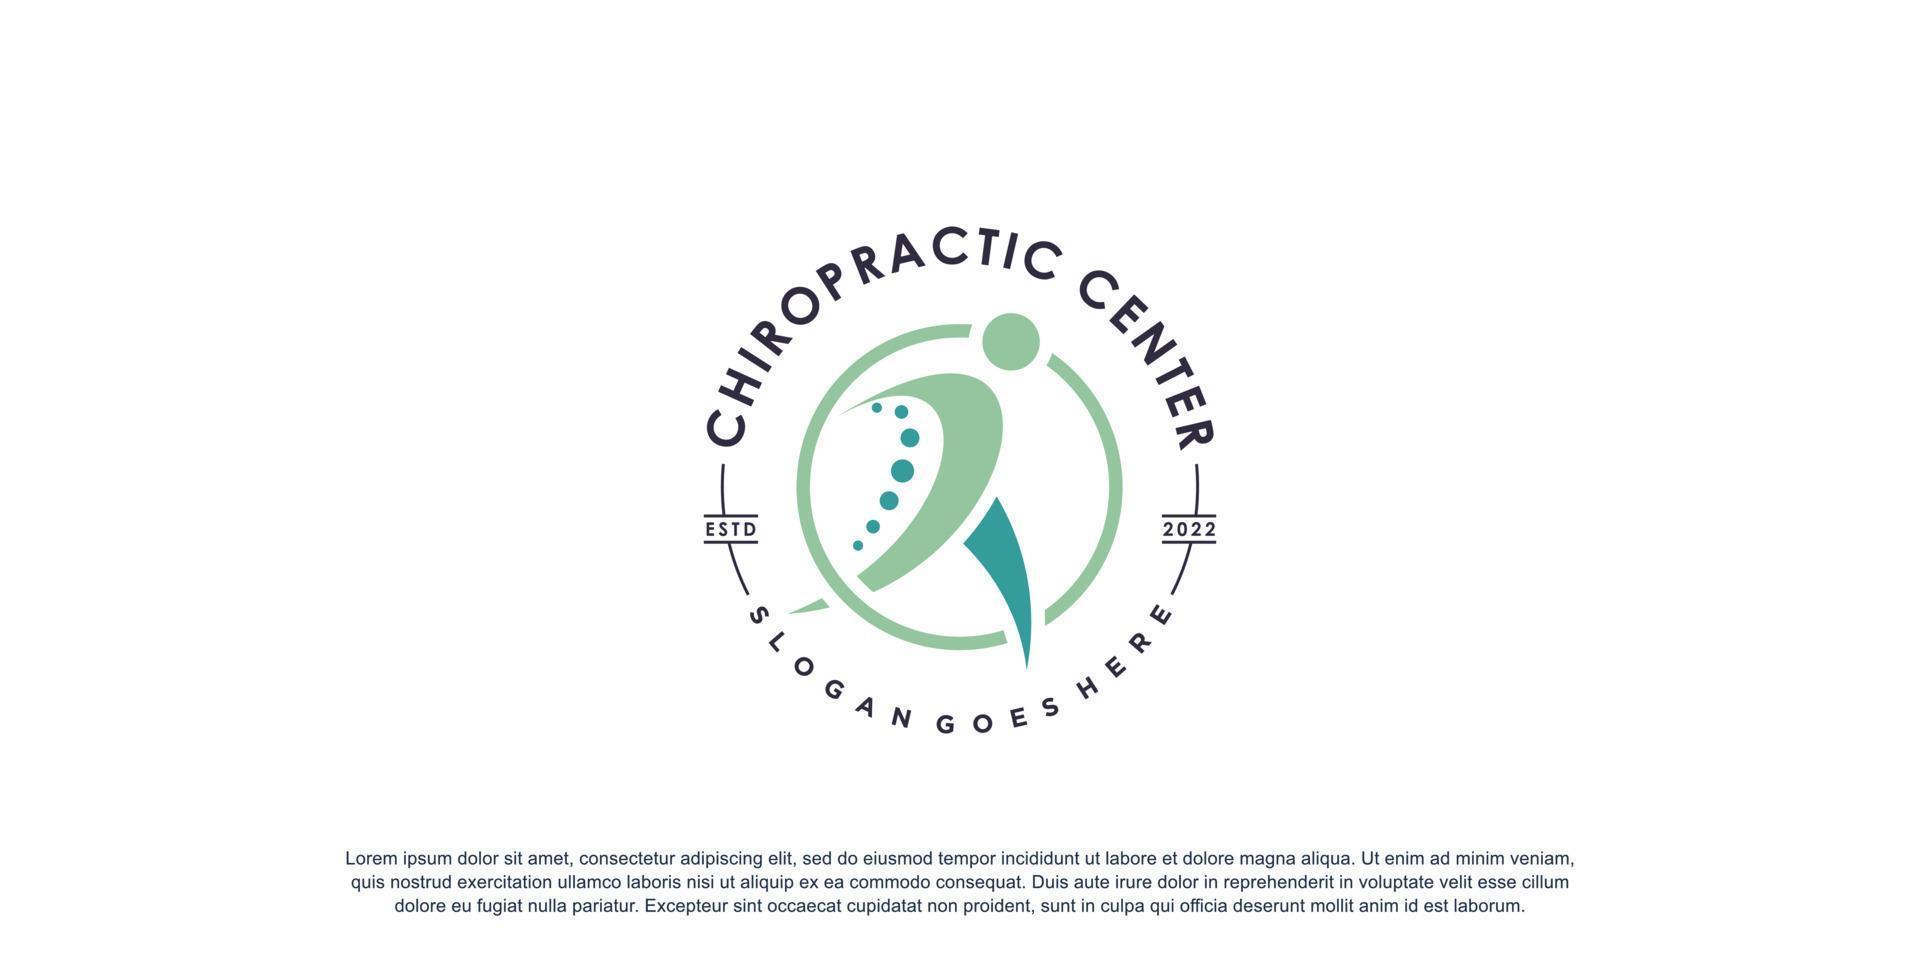 Chiropraktik-Logo für Massage und Geschäft mit kreativem Elementkonzept Premium-Vektor vektor